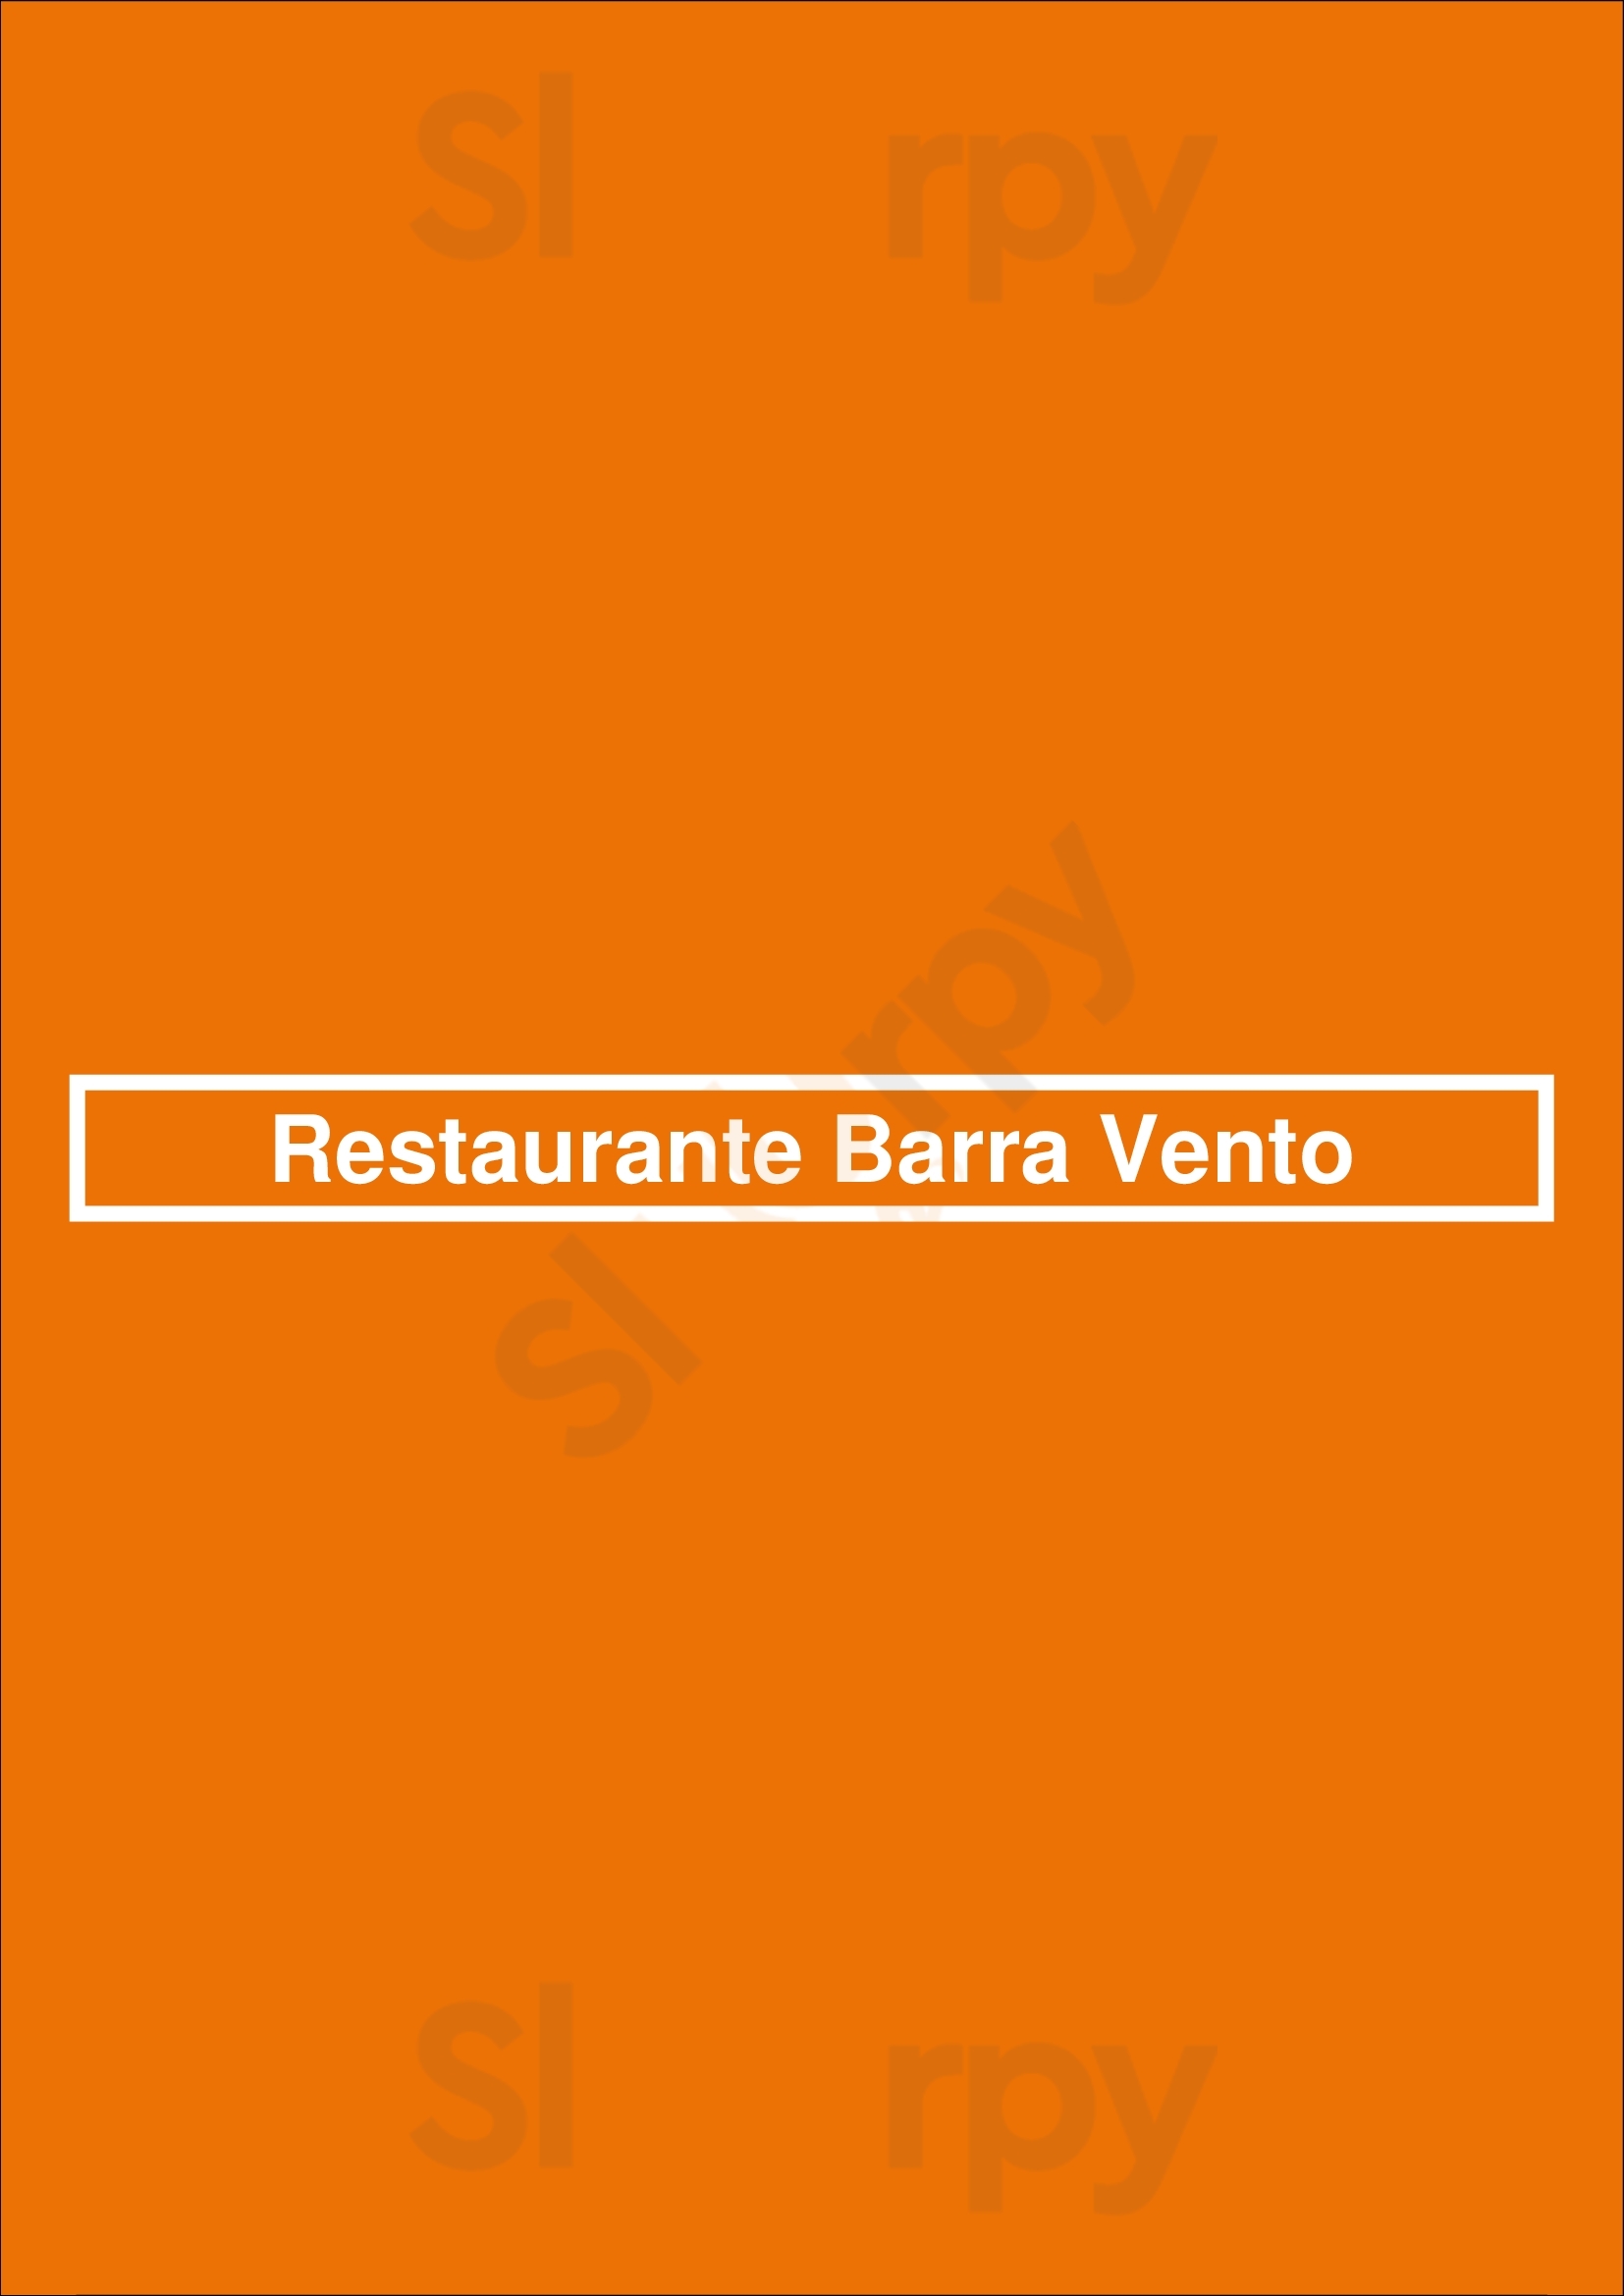 Restaurante Barra Vento Salvador Menu - 1